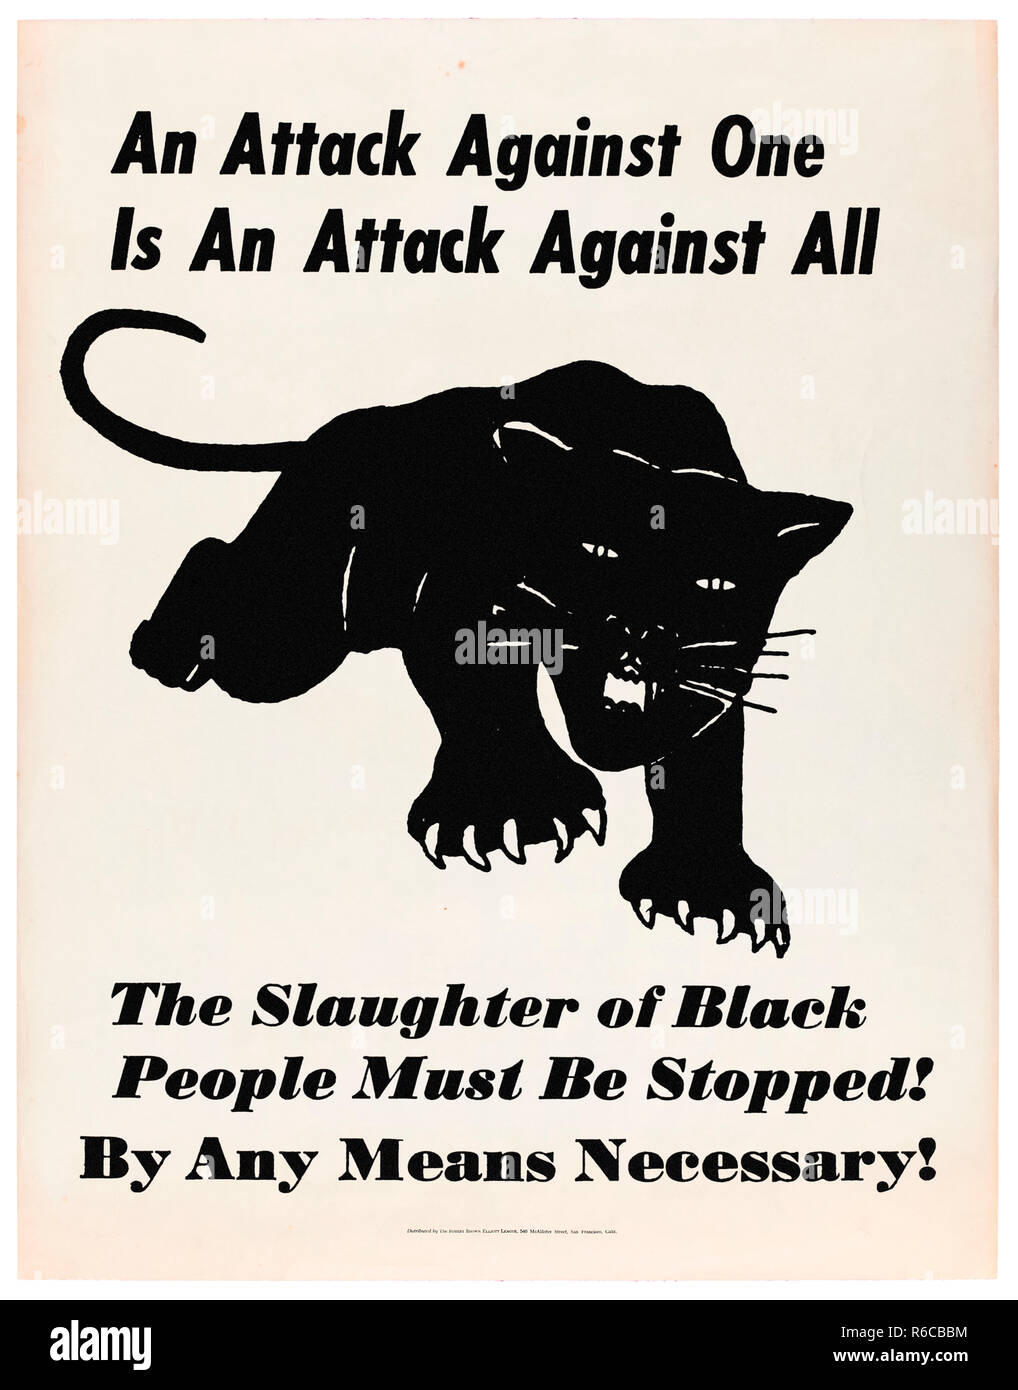 "Une attaque contre un est une attaque contre tous - l'abattage des Noirs doit être arrêté ! Par tous les moyens nécessaires !' 1969 affiche pour le Black Panther Party for Self-Defense. Voir plus d'informations ci-dessous. Banque D'Images